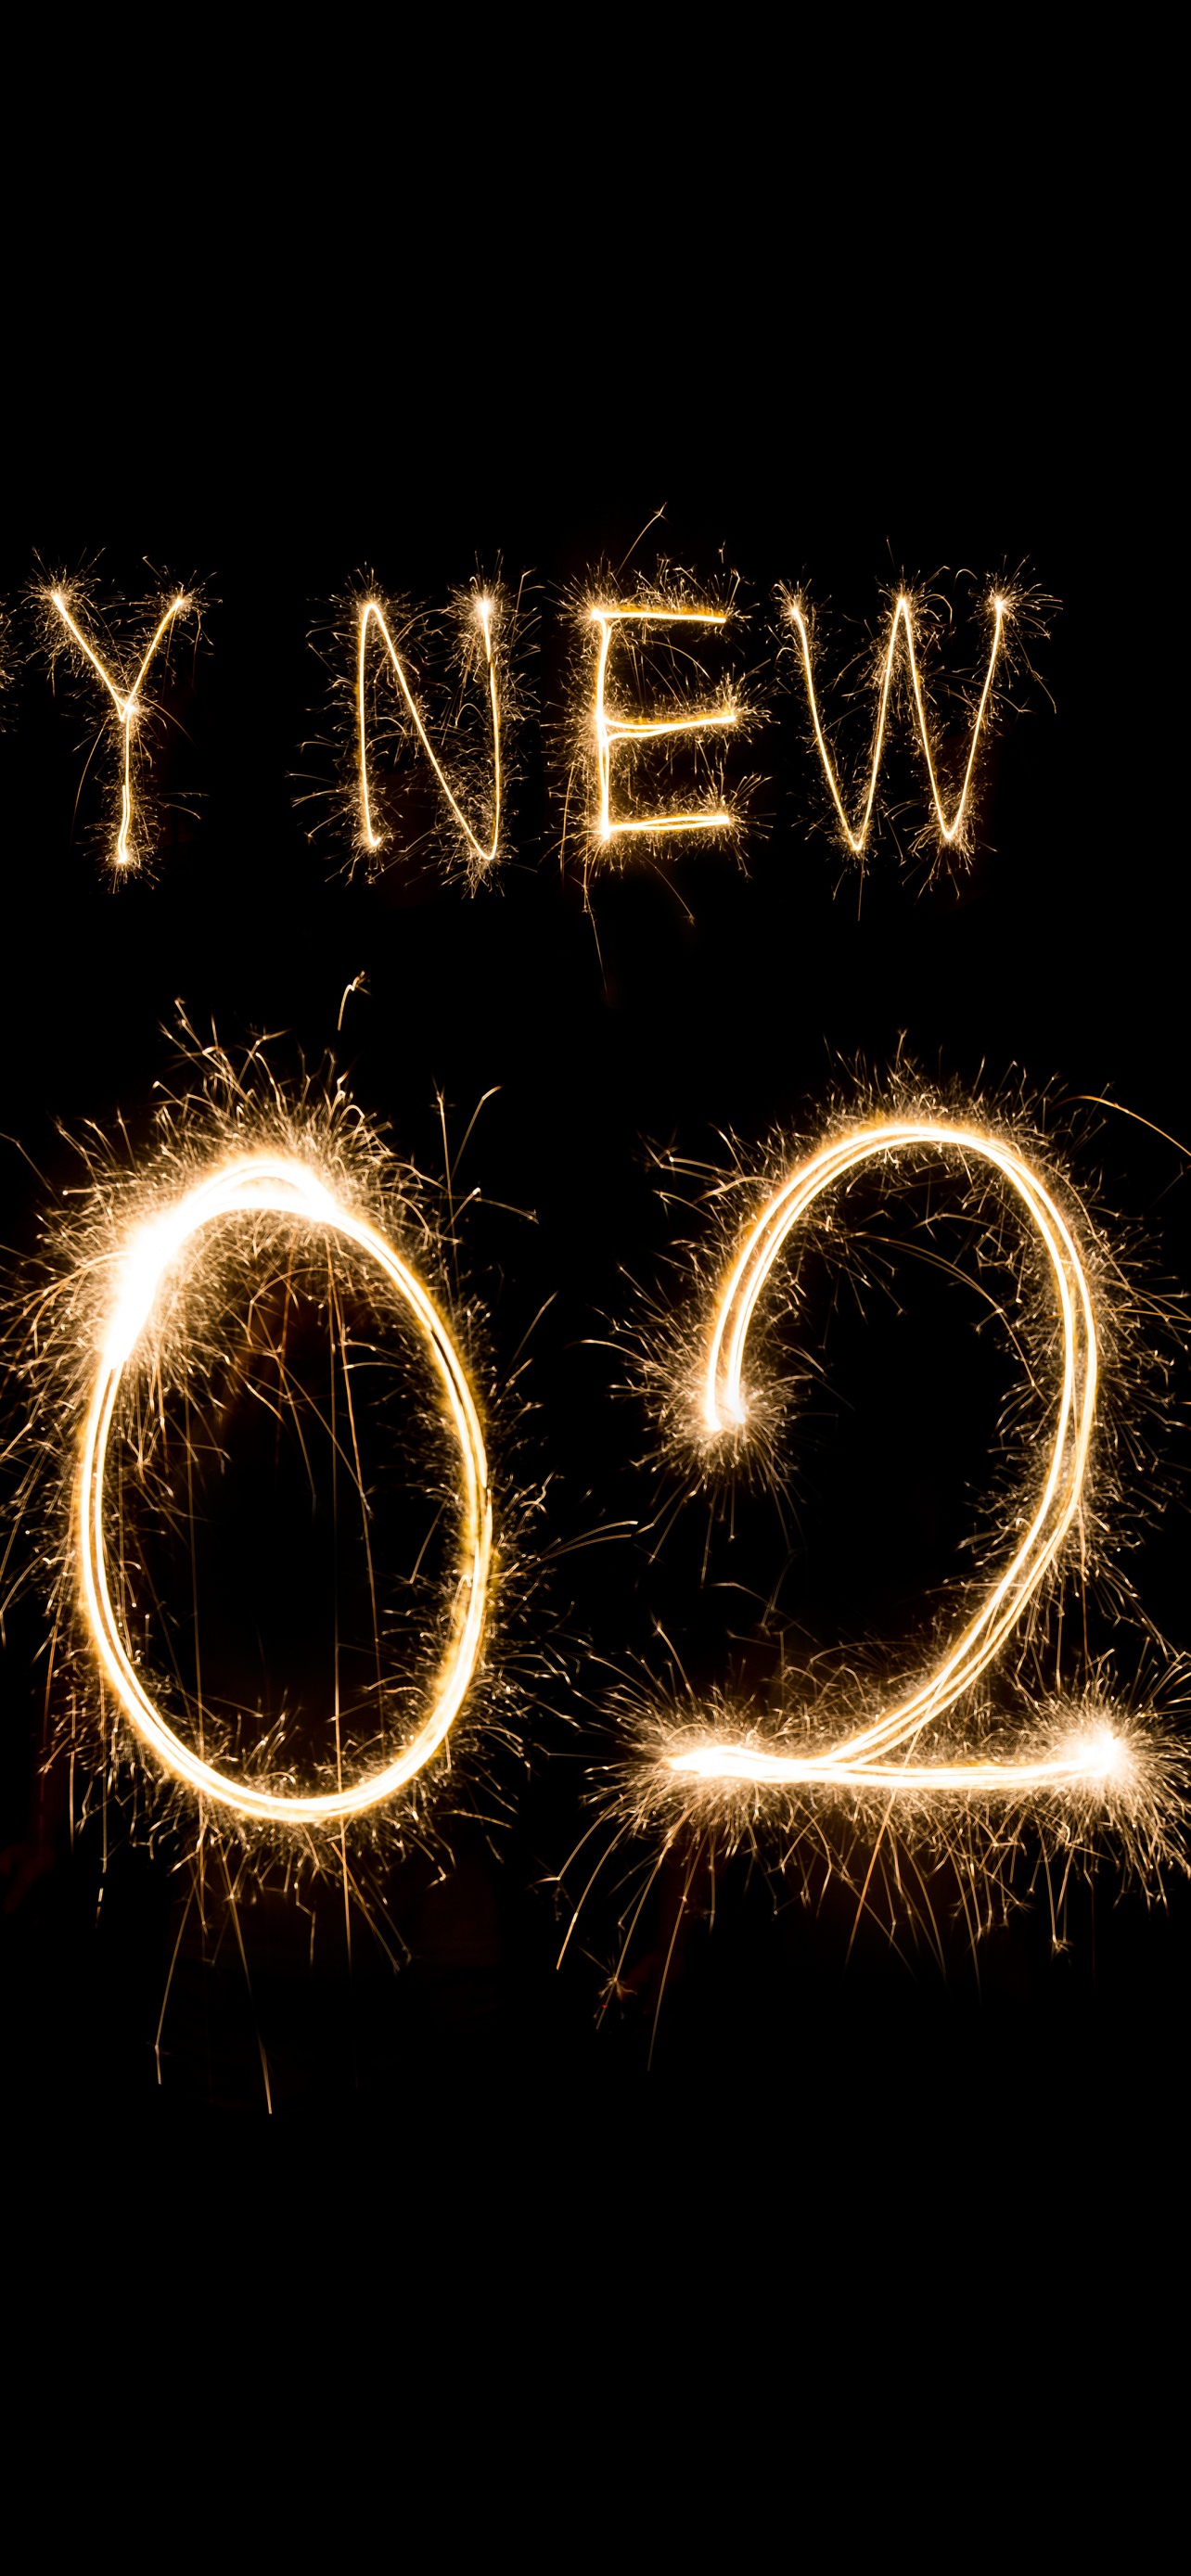 Happy New Year 2024 wallpaper in 4K with fireworks and sparklers: Xem những hình ảnh cho năm mới 2024 với chất lượng 4K, đầy sắc nét, cùng với pháo hoa và cầu vồng lấp lánh sẽ làm bạn thích thú. Khám phá và lựa chọn những hình nền tuyệt đẹp để thể hiện tinh thần sôi động của mình.